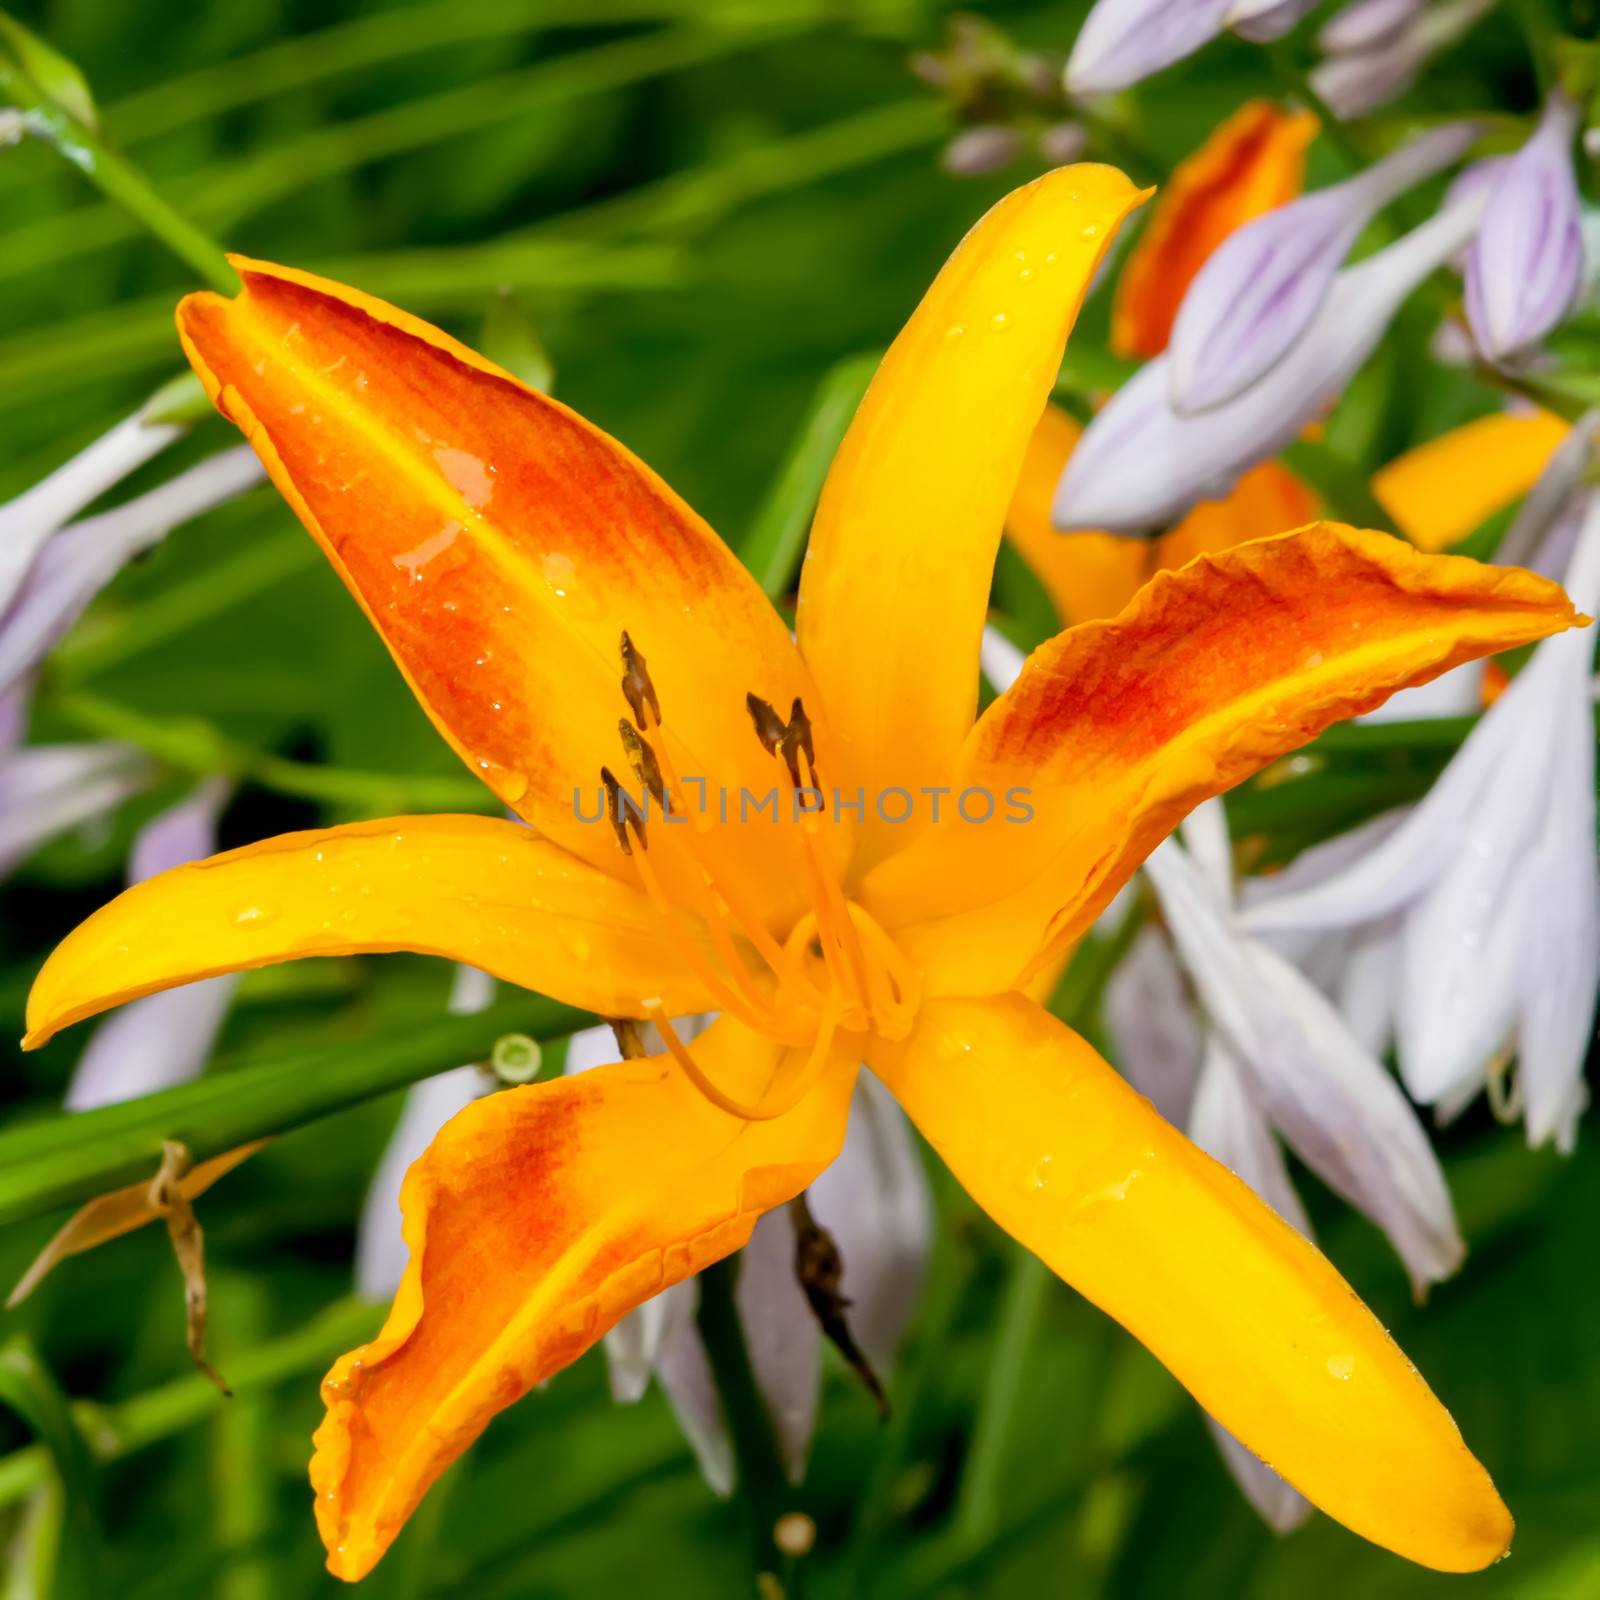 Orange bud of day-lily flower by digidreamgrafix